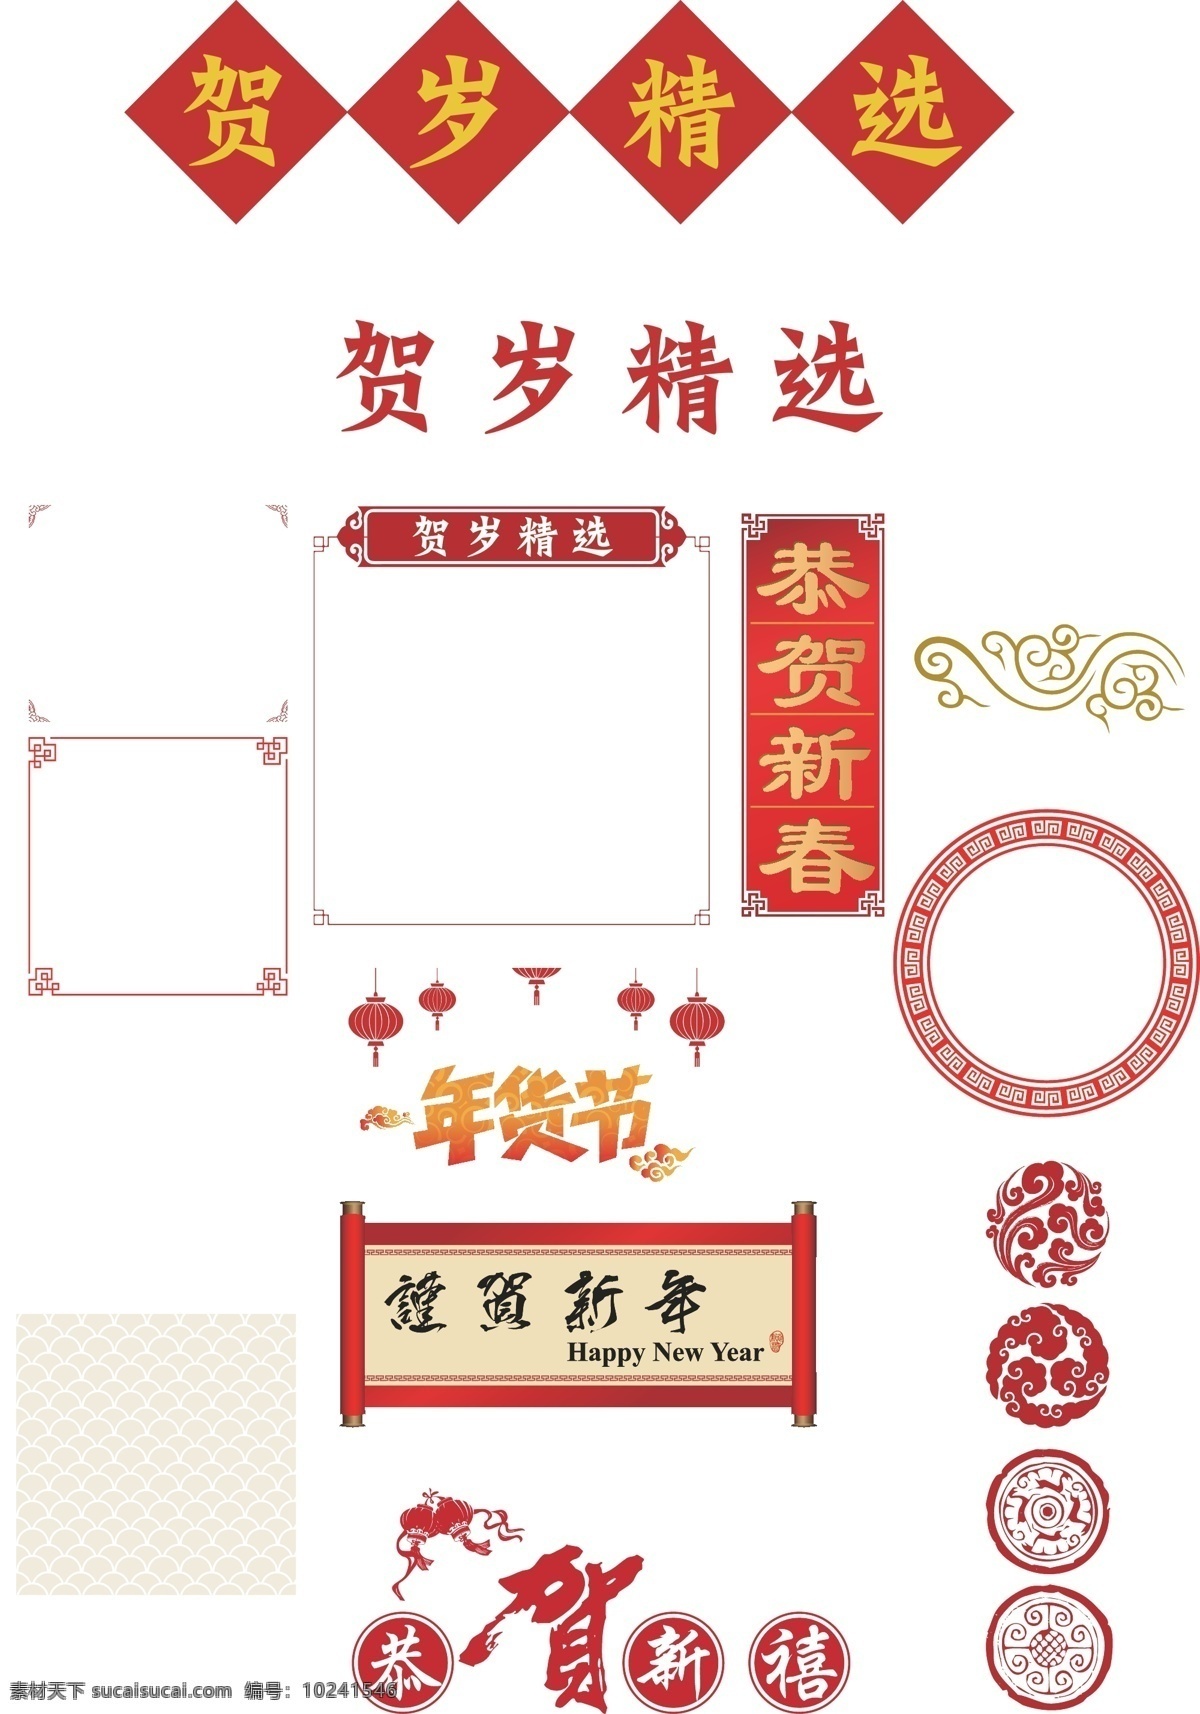 中国 新年 传统 元素 边框 文字 春节 节日 传统元素 描边 装饰